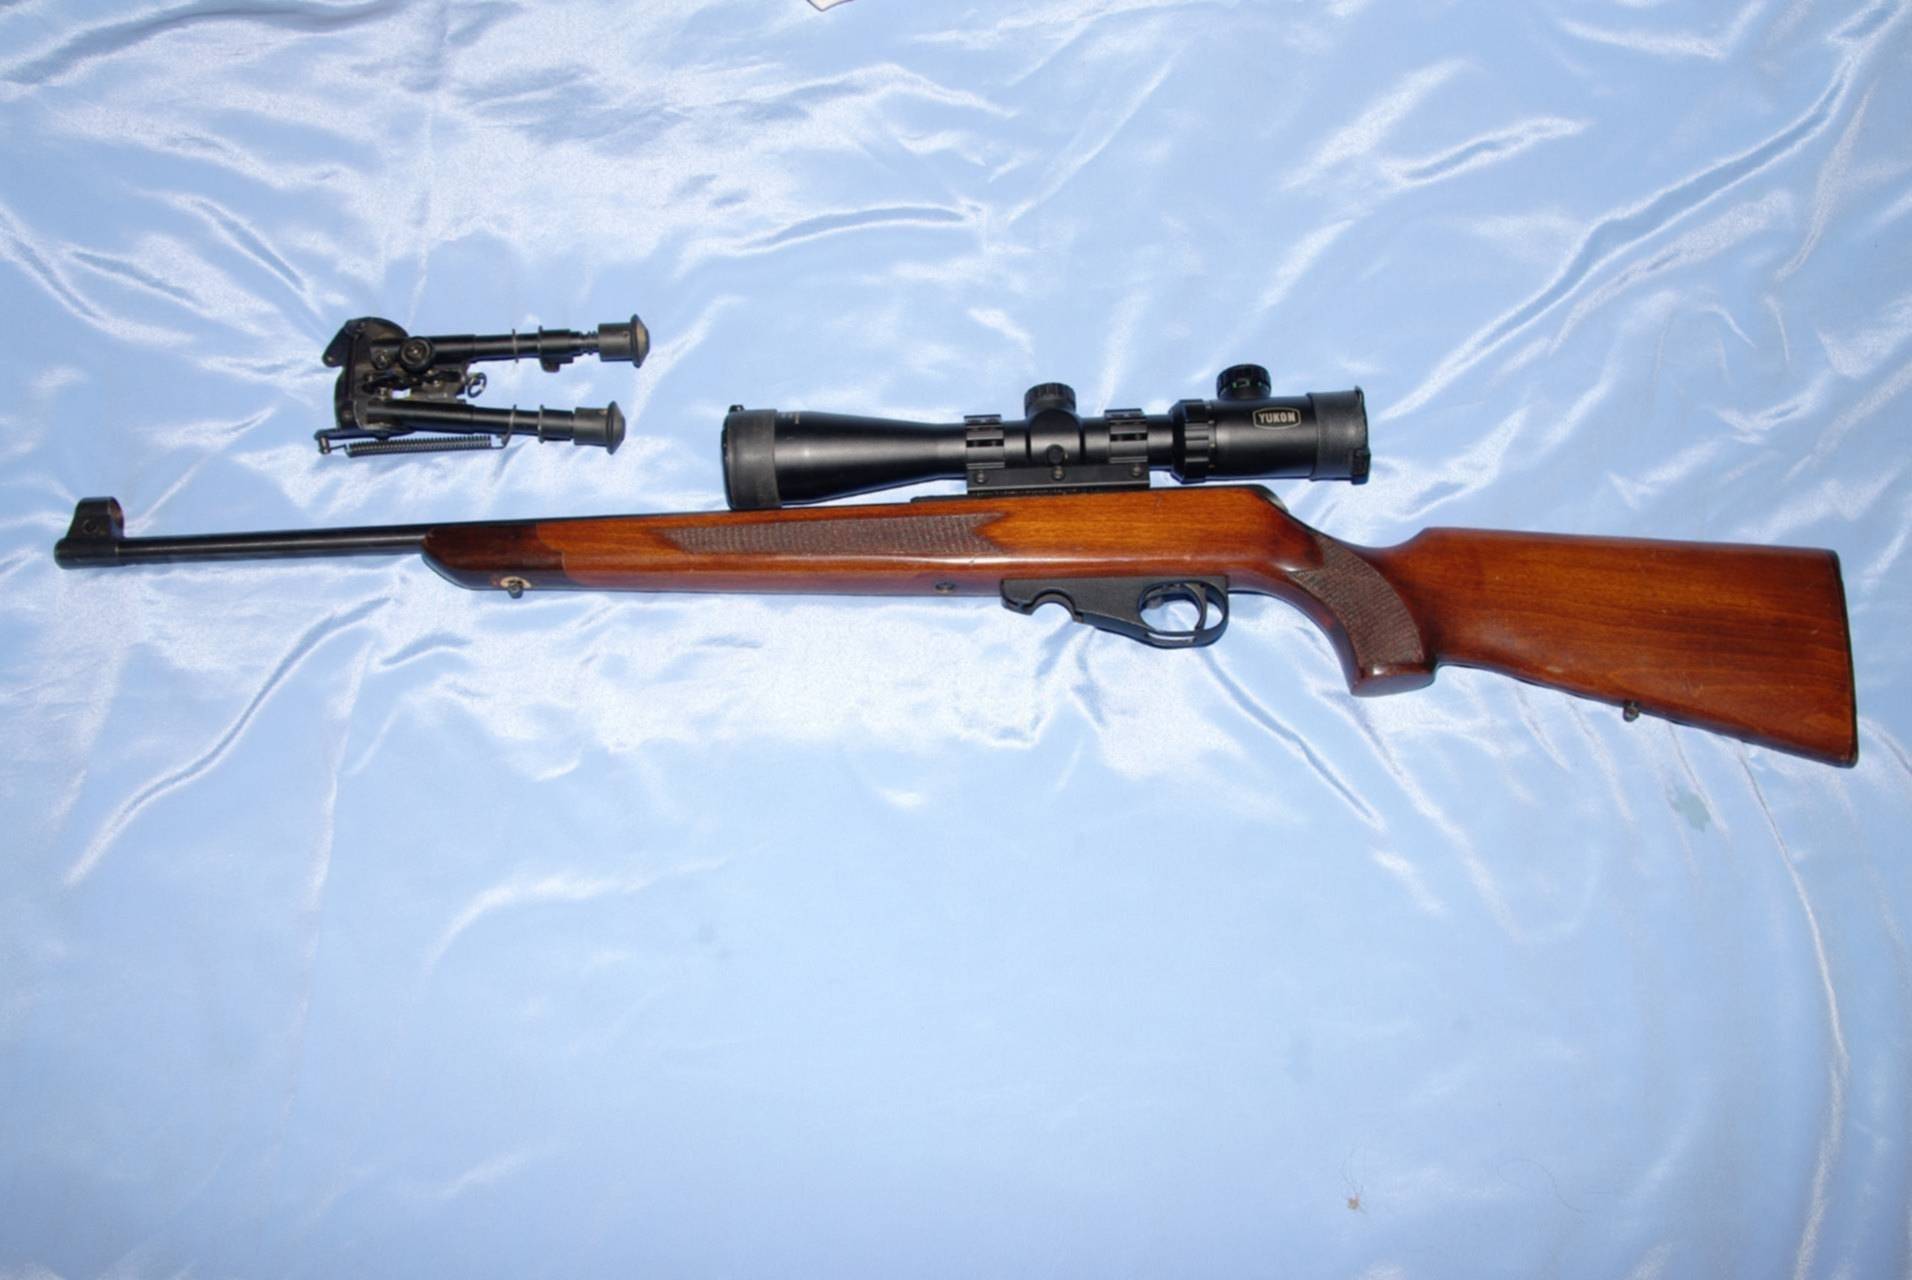 Карабин тоз-78 – мелкокалиберное ружье для профессиональной охоты